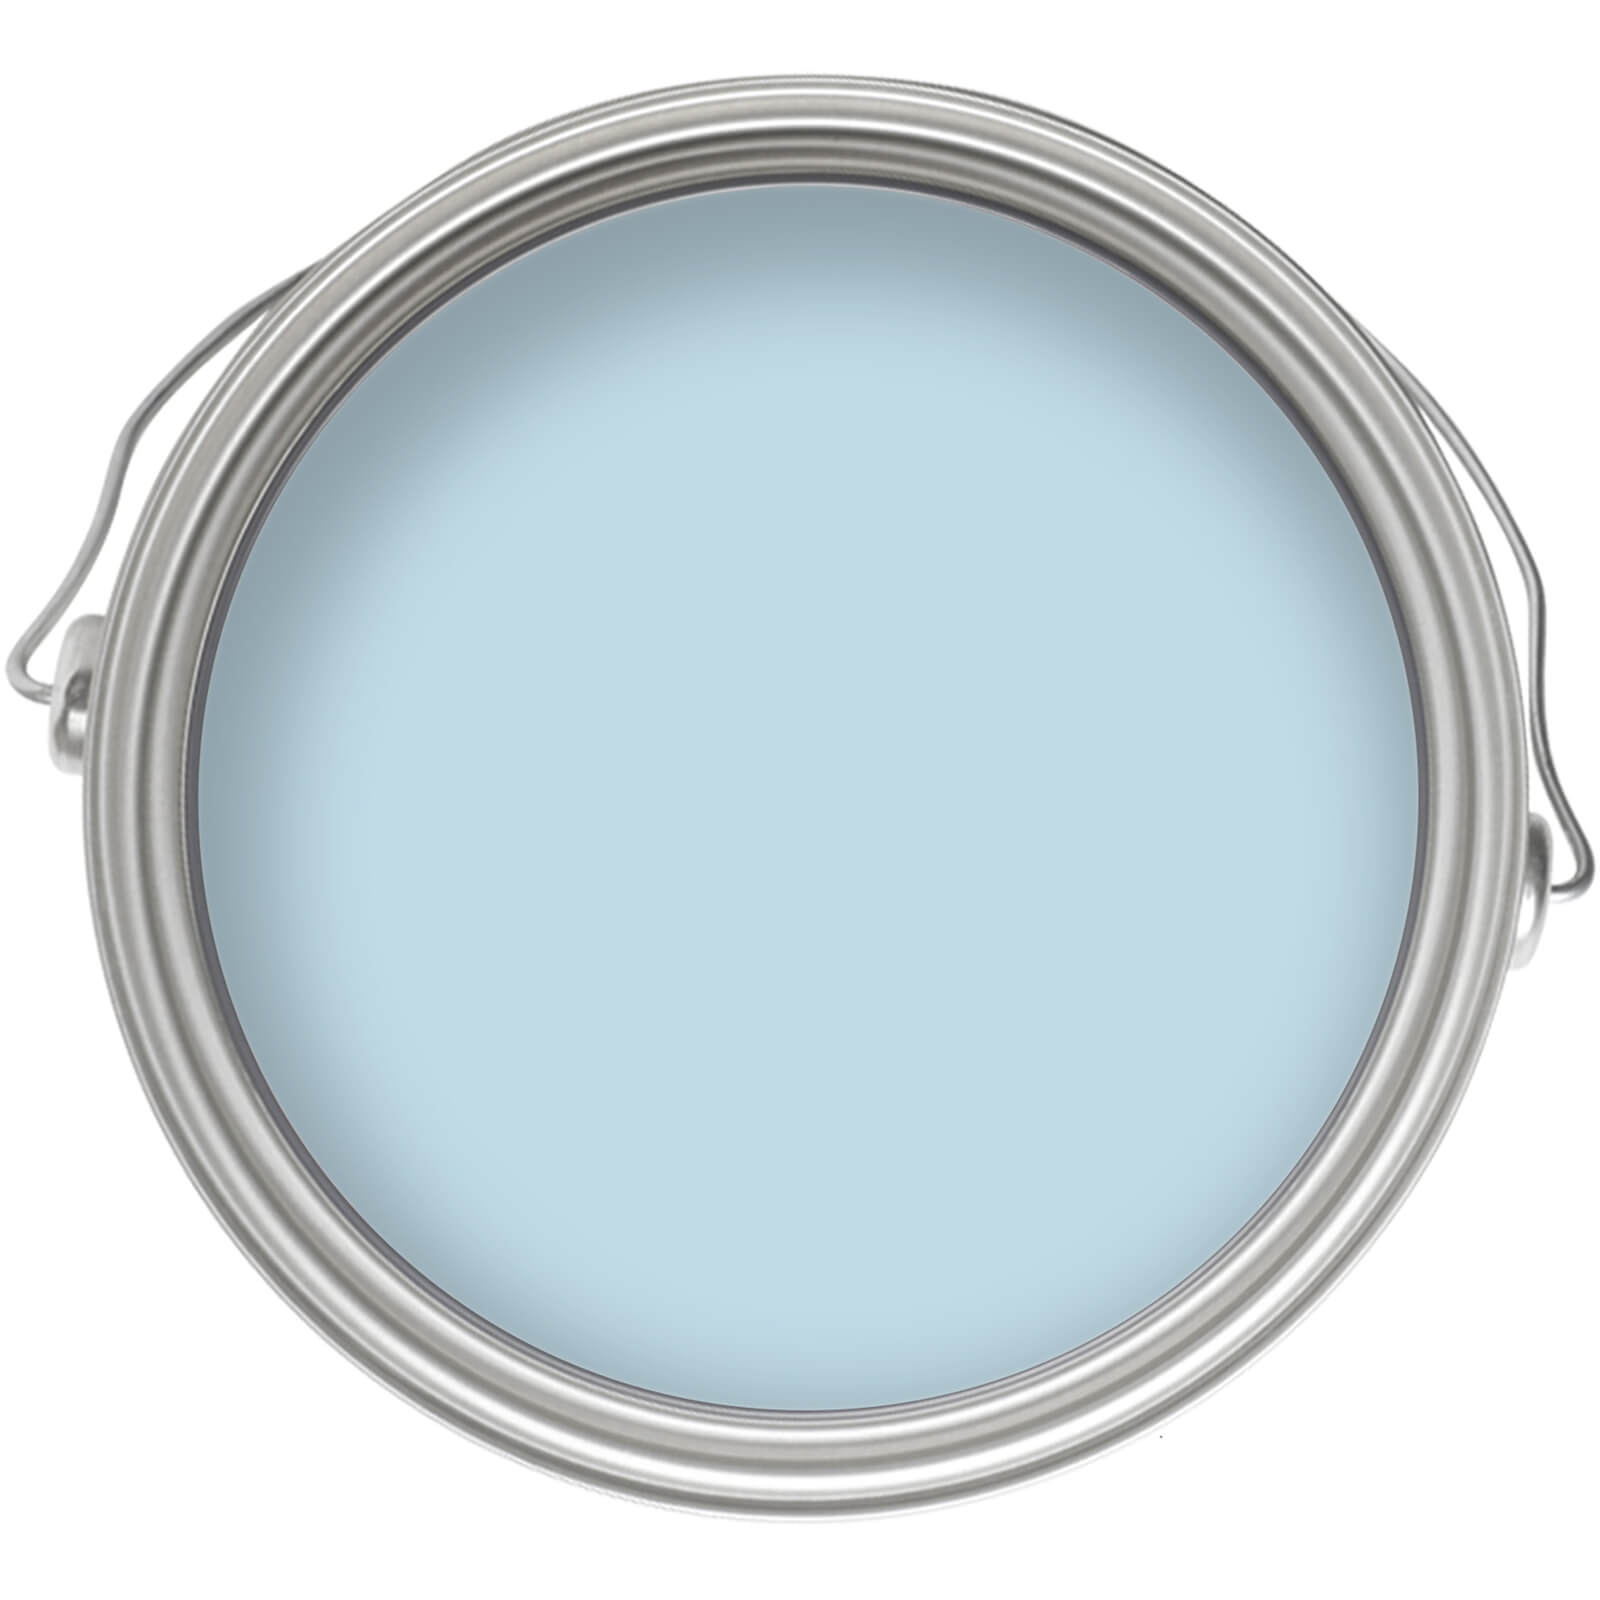 Homebase Tough & Durable Matt Emulsion Paint Blue Lace - 5L